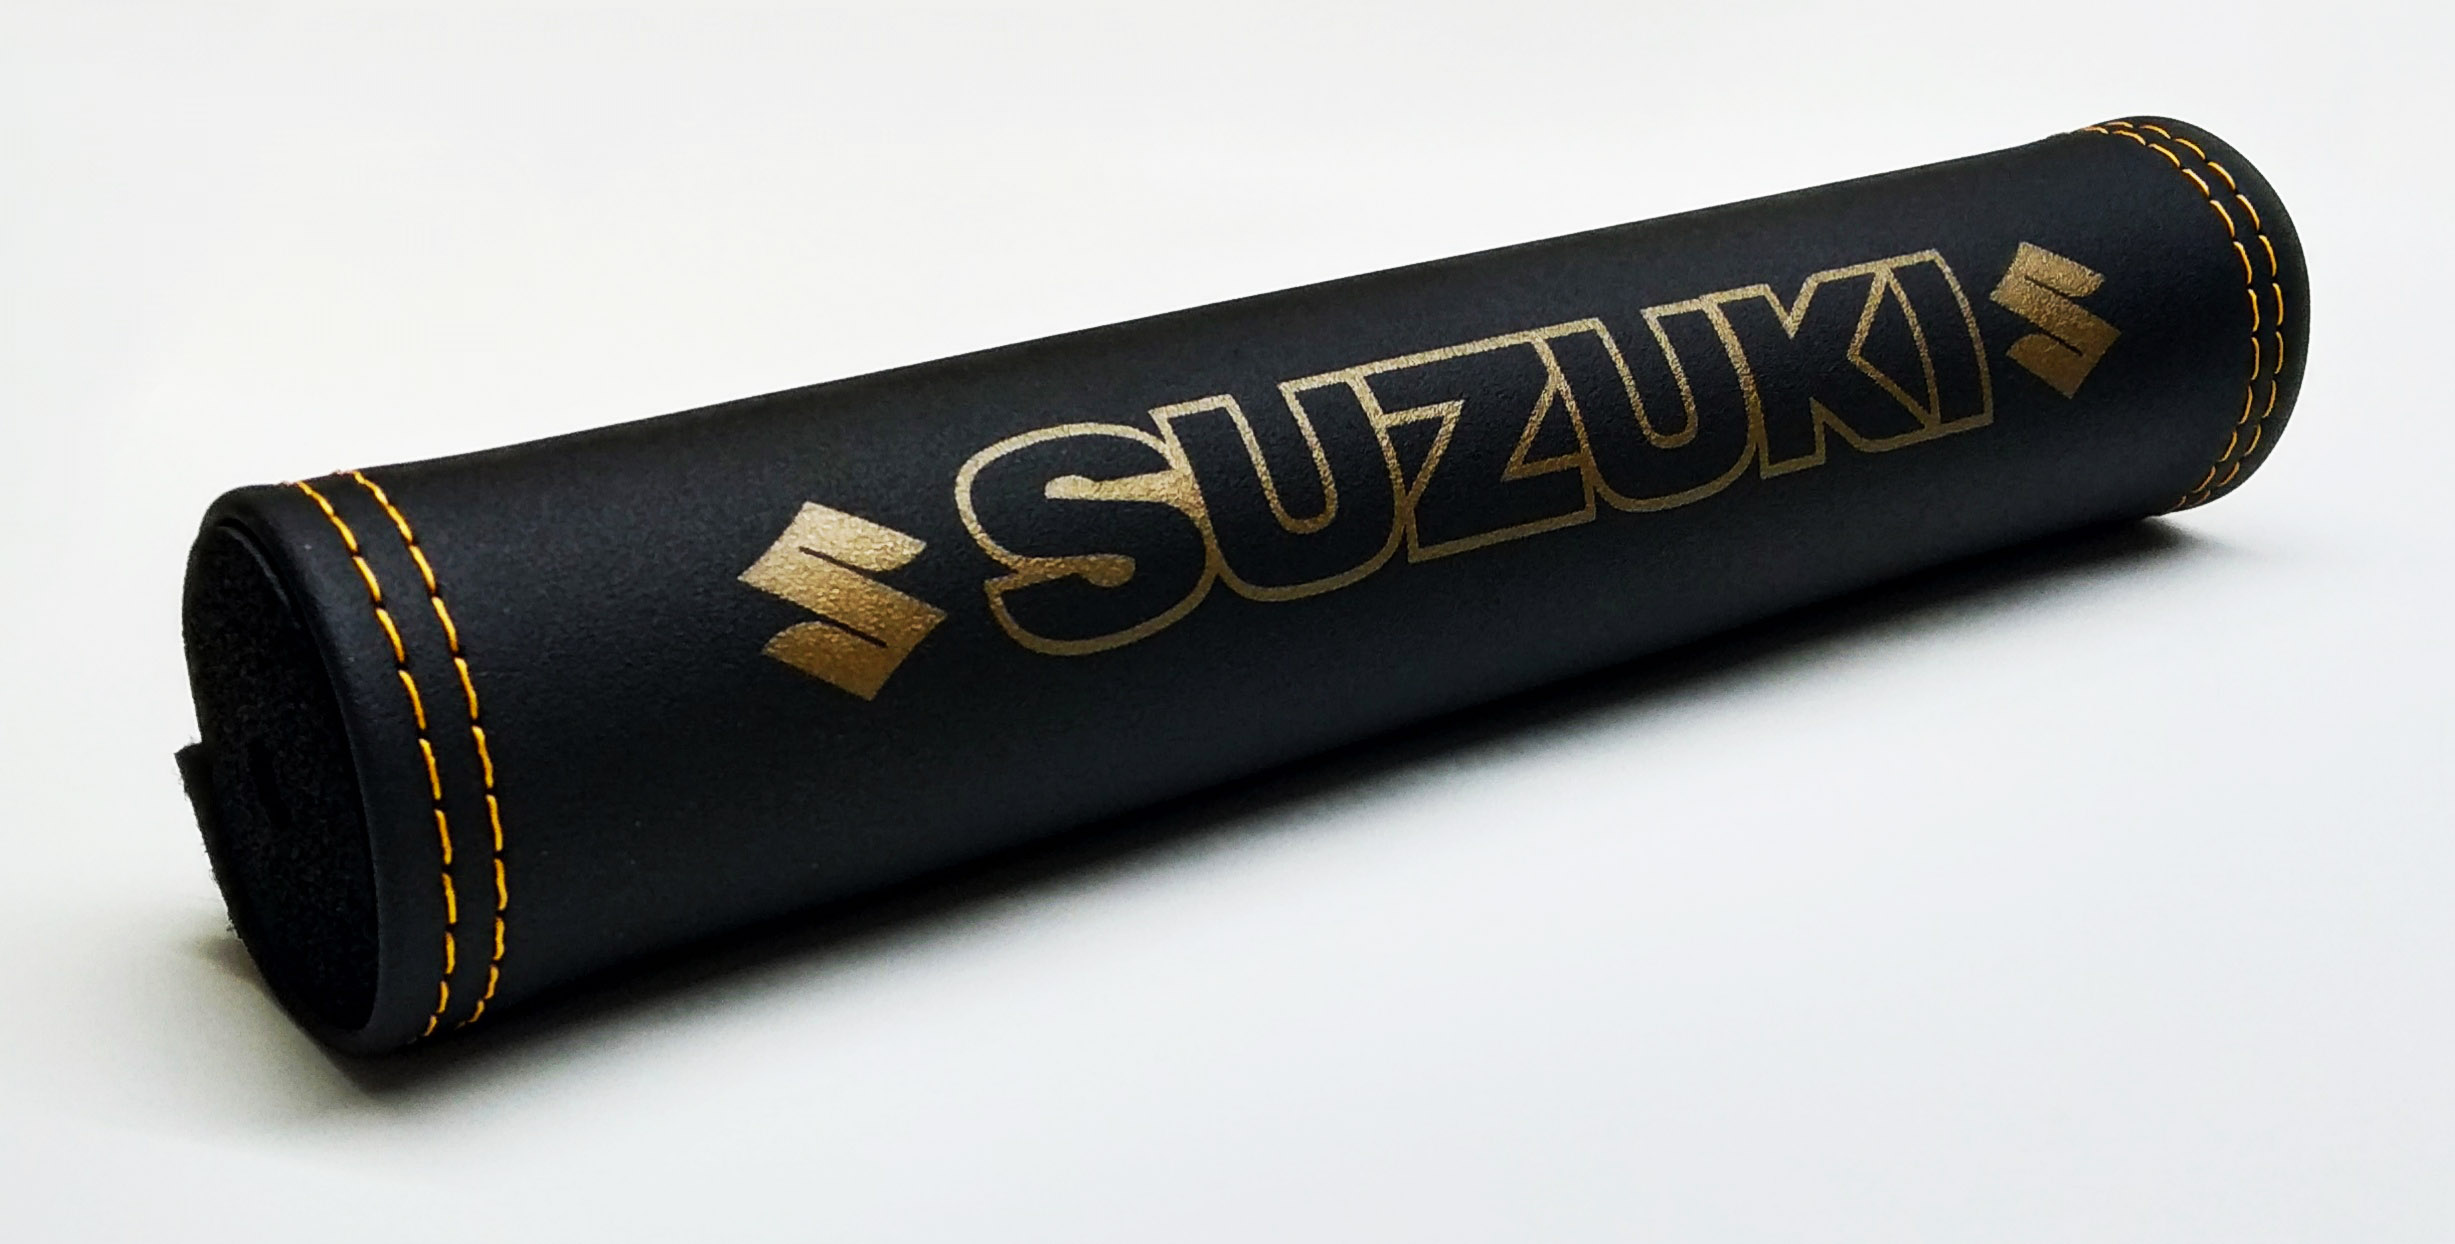 Suzuki crossbar pad (gold logo)